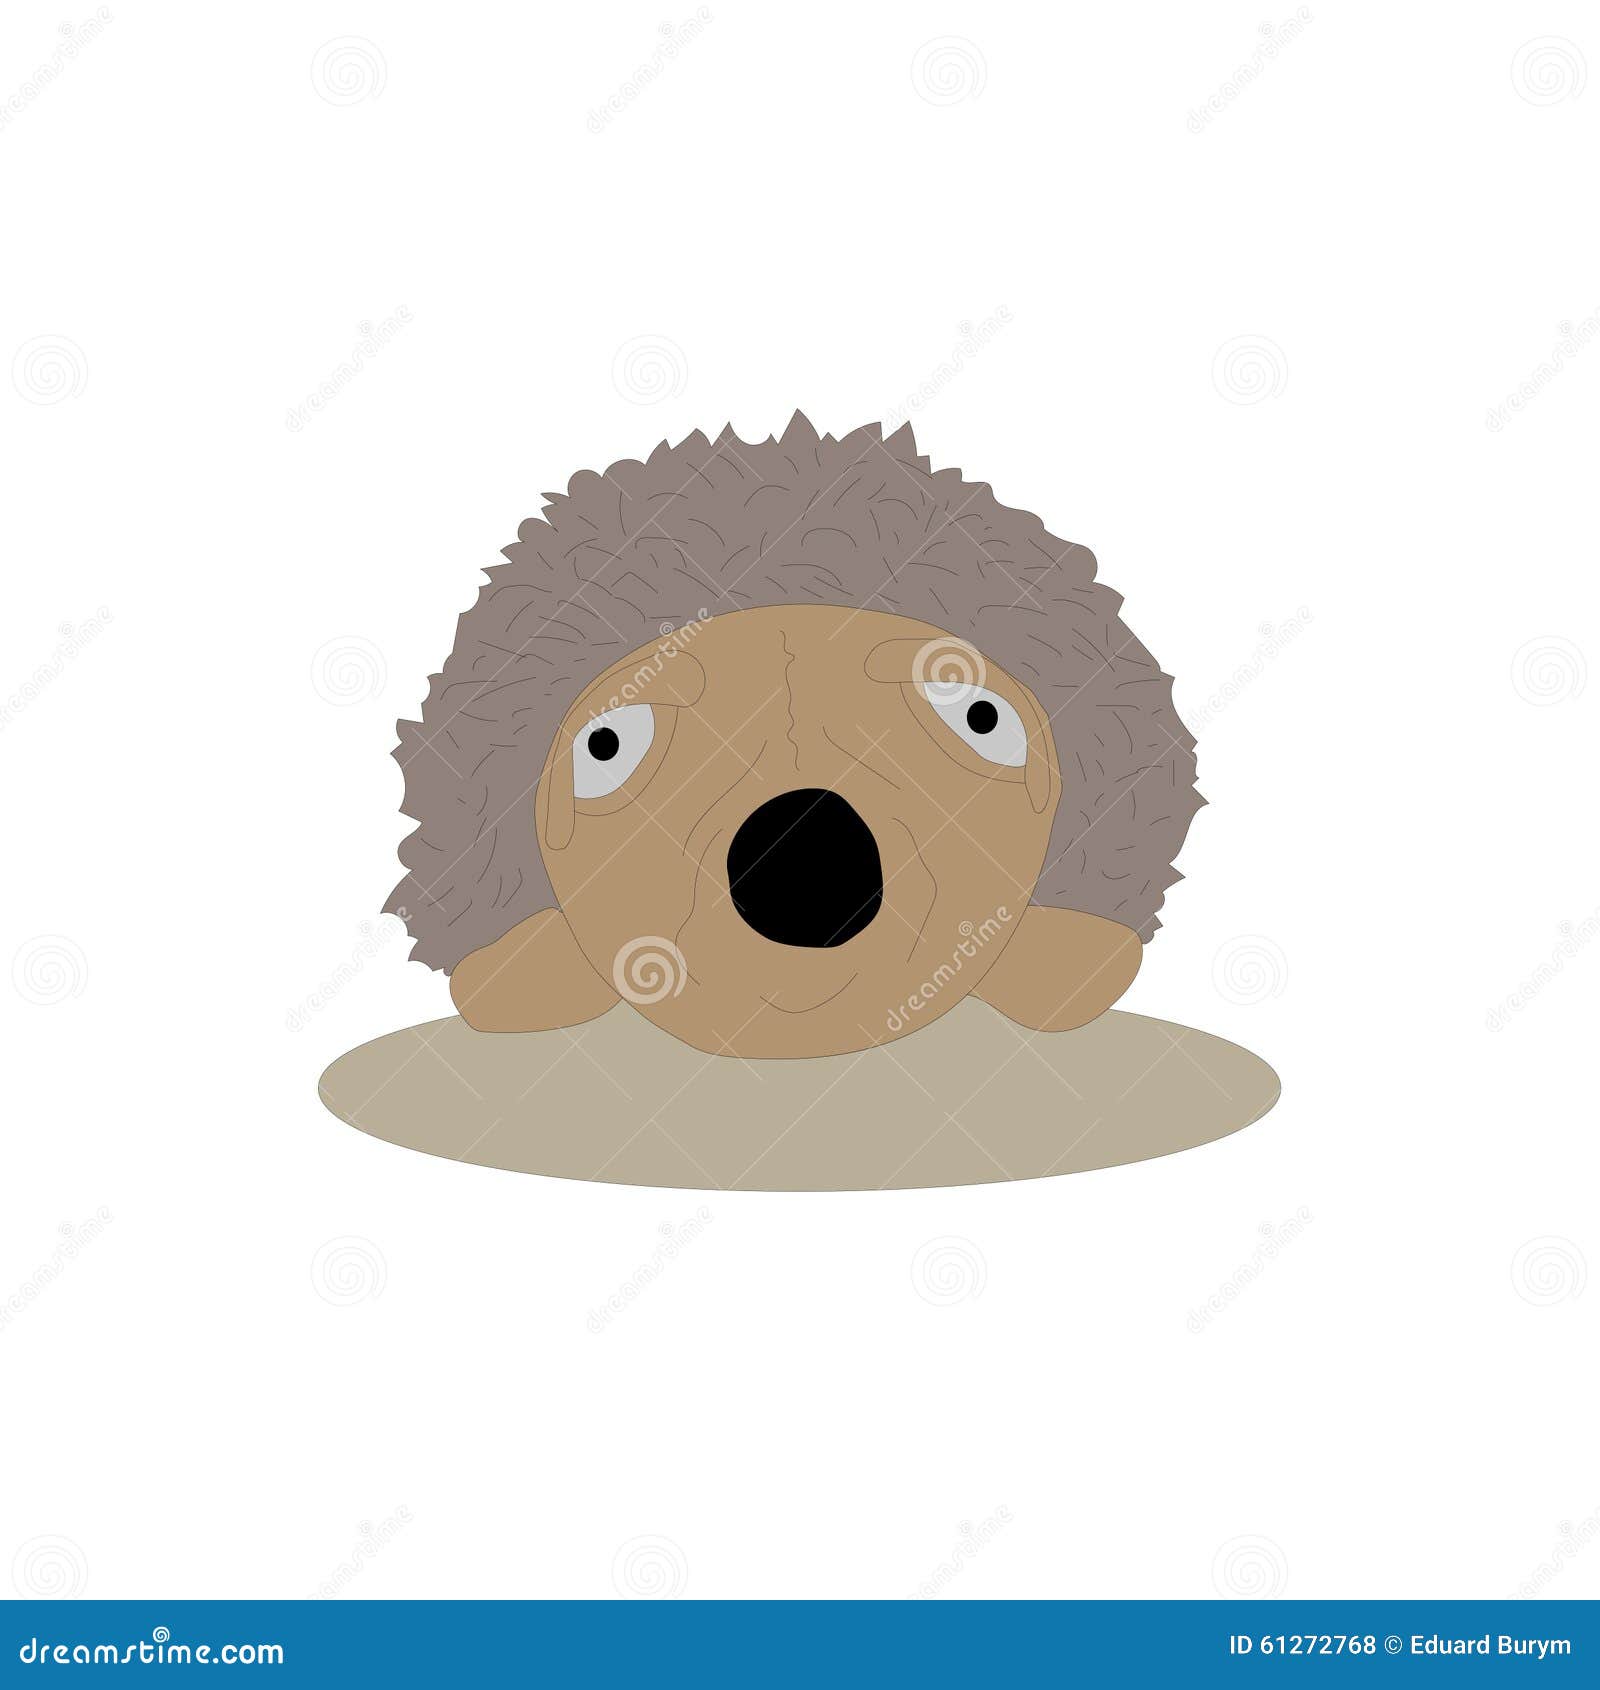 Old hedgehog stock vector. Illustration of funny, hedgehog - 61272768